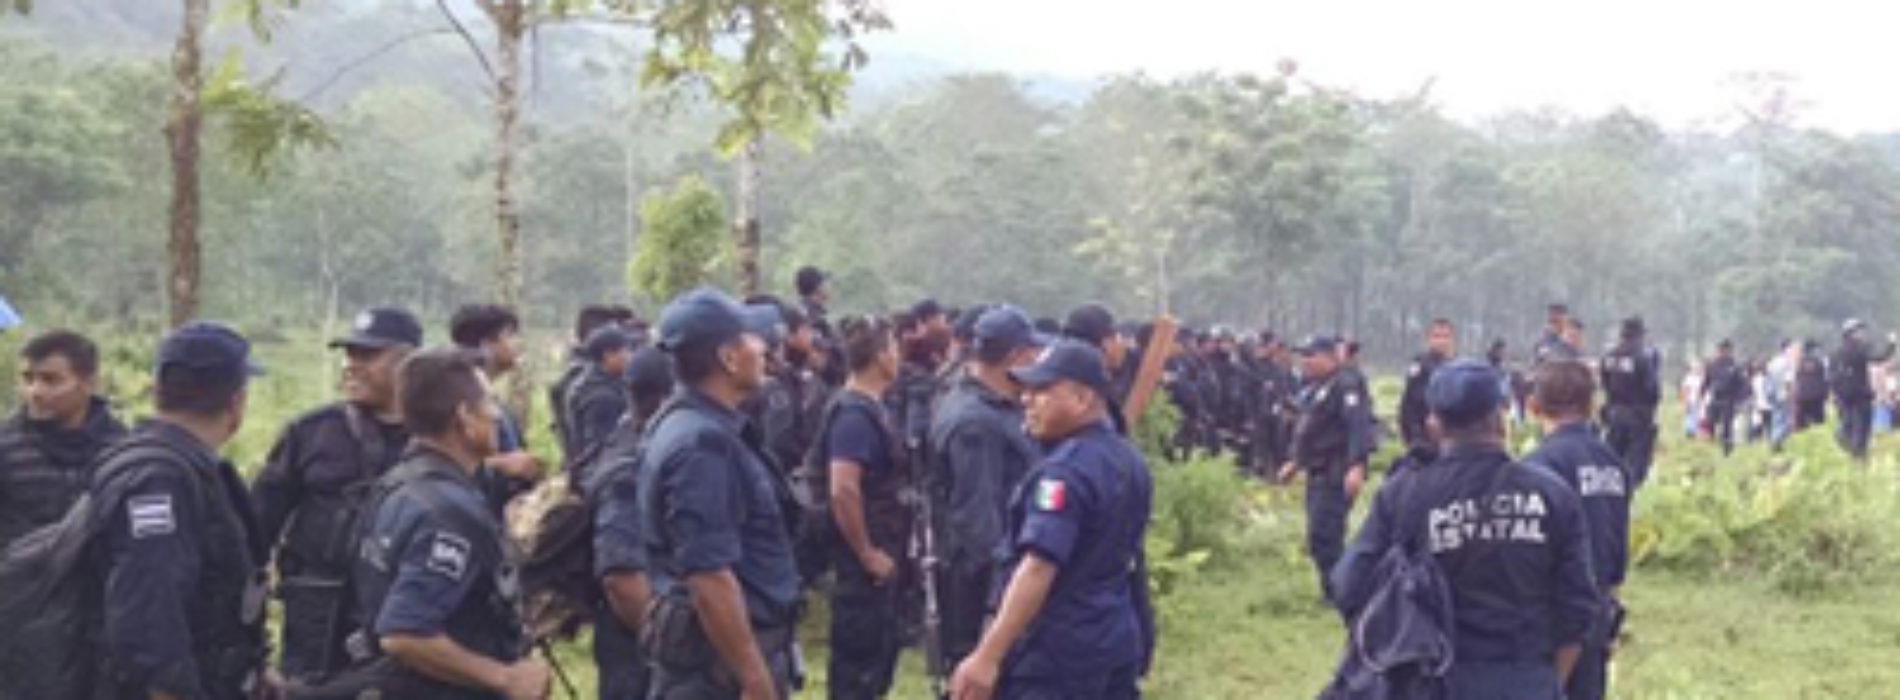 En apego a la legalidad, fuerzas de seguridad  desalojan  a invasores de territorio Chimalapa